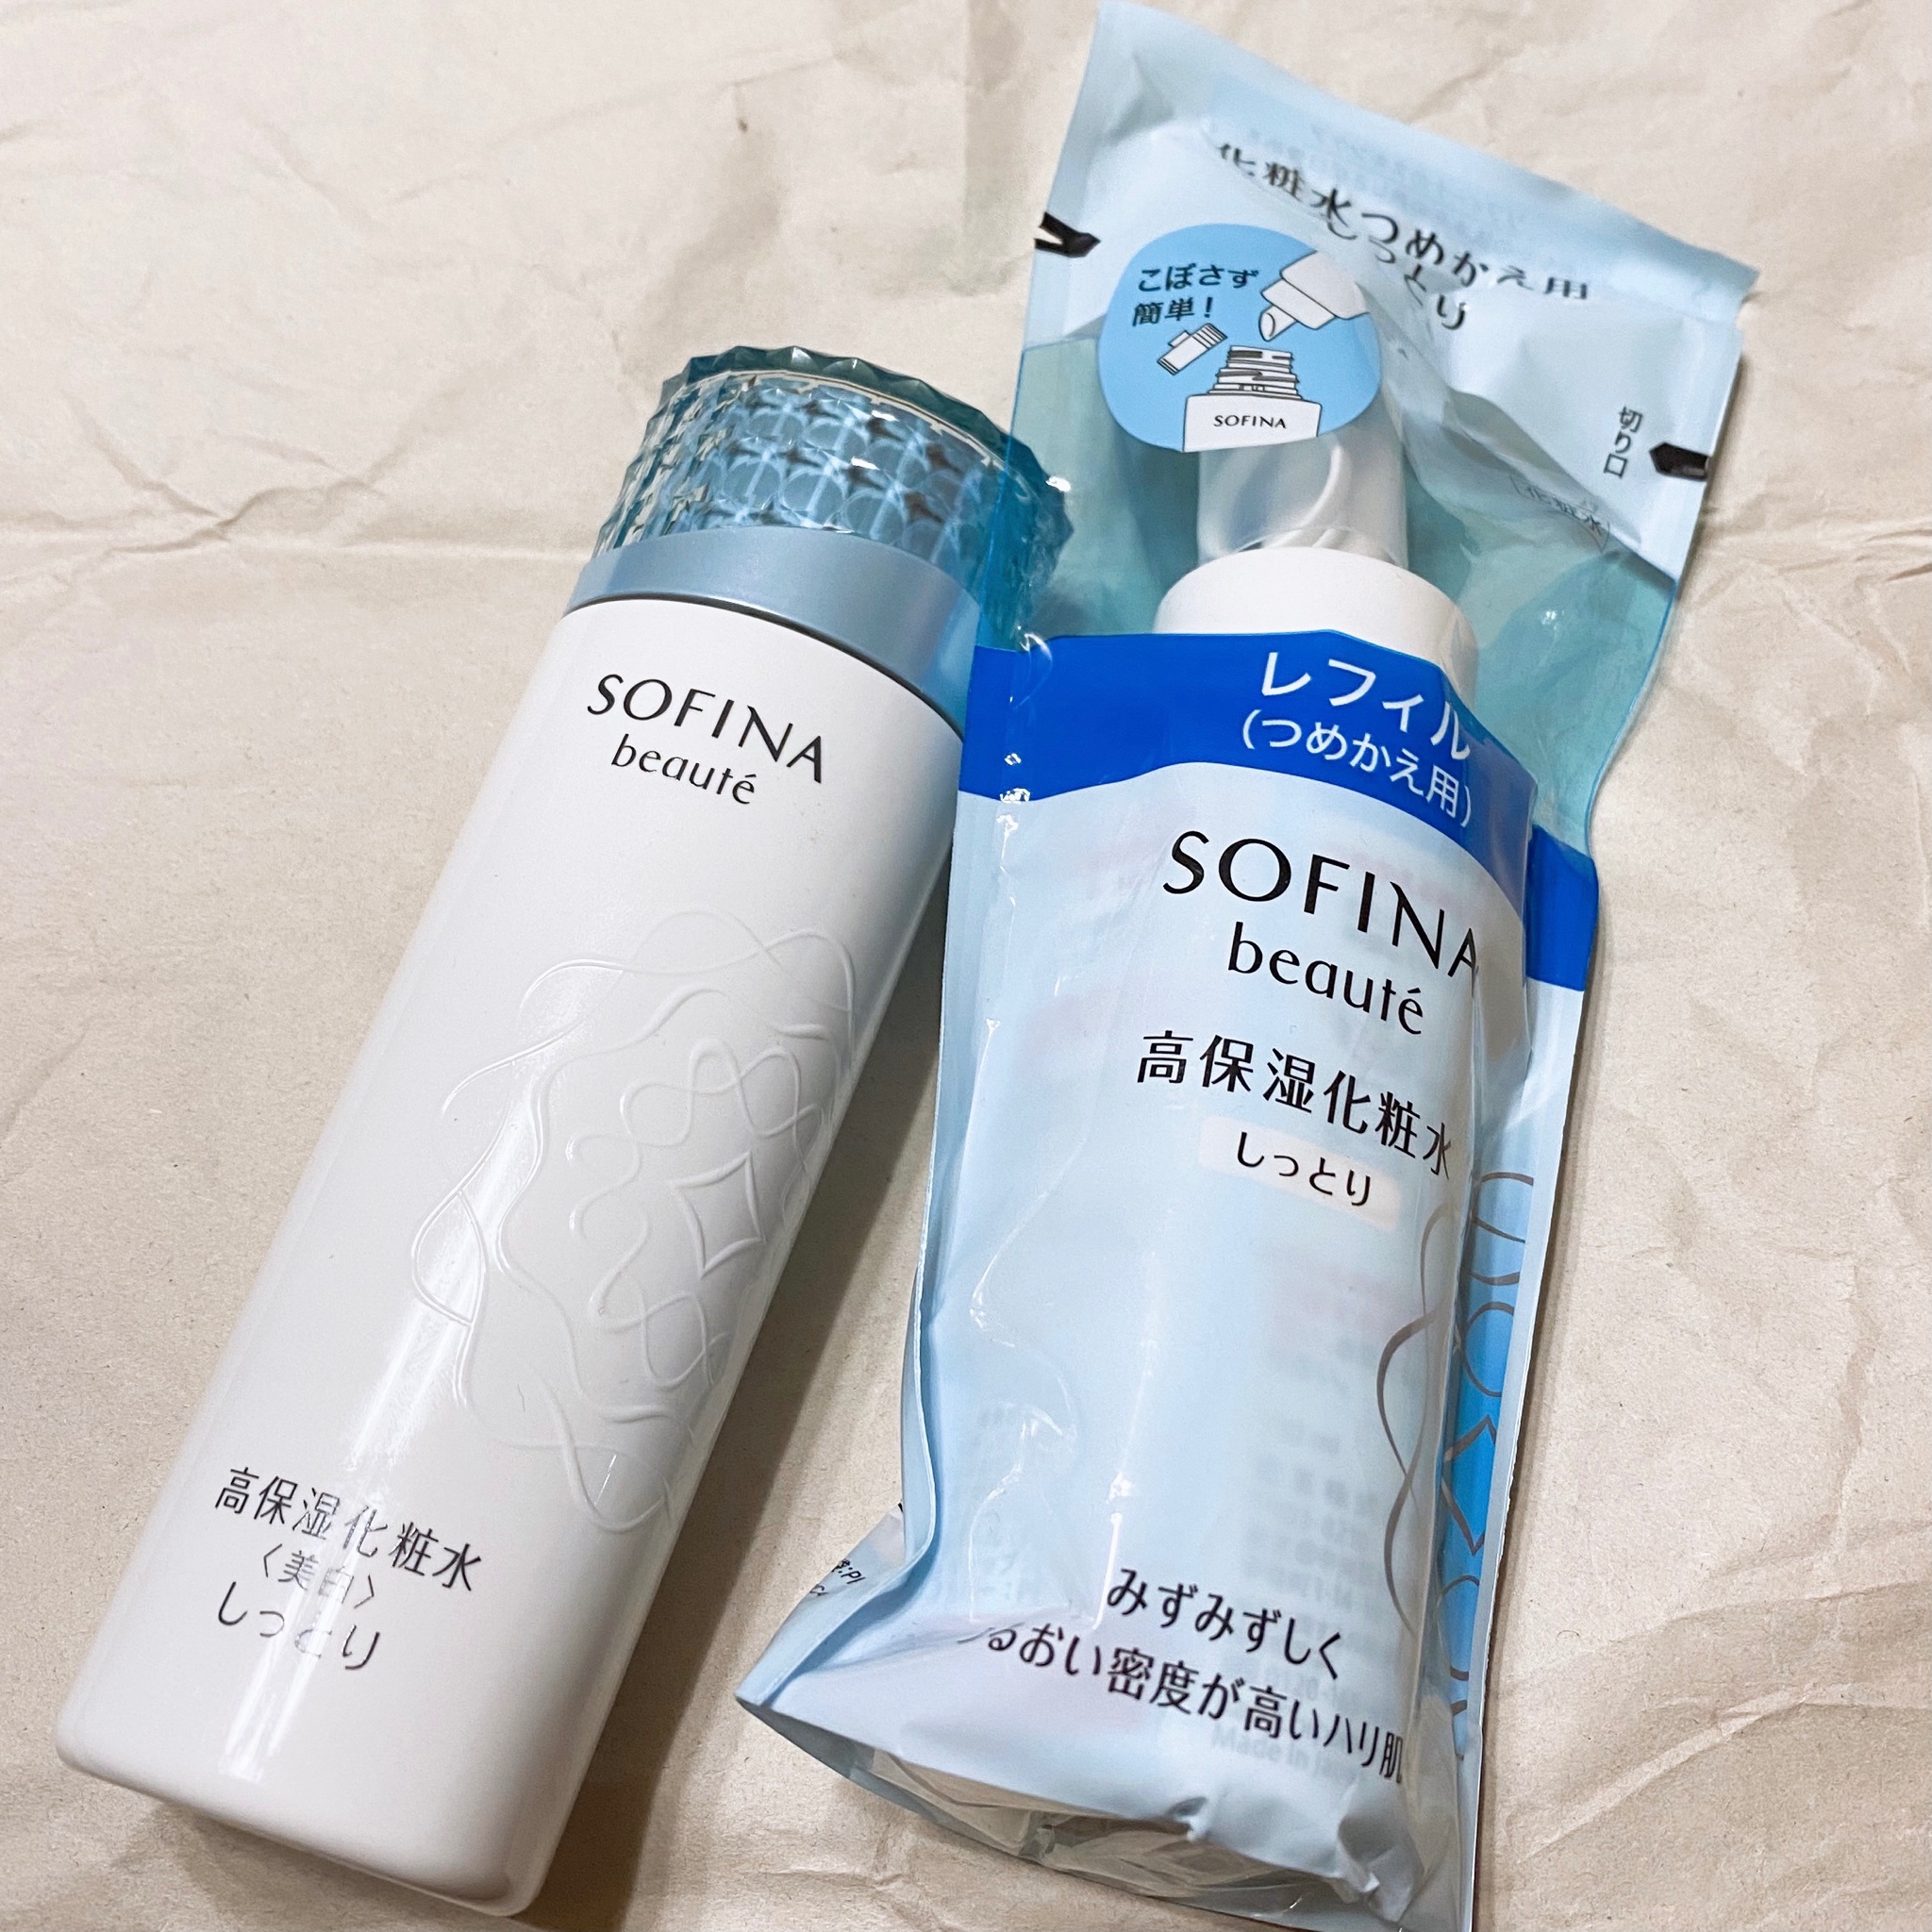 ソフィーナ ボーテ / 高保湿化粧水 とてもしっとりの公式商品情報 